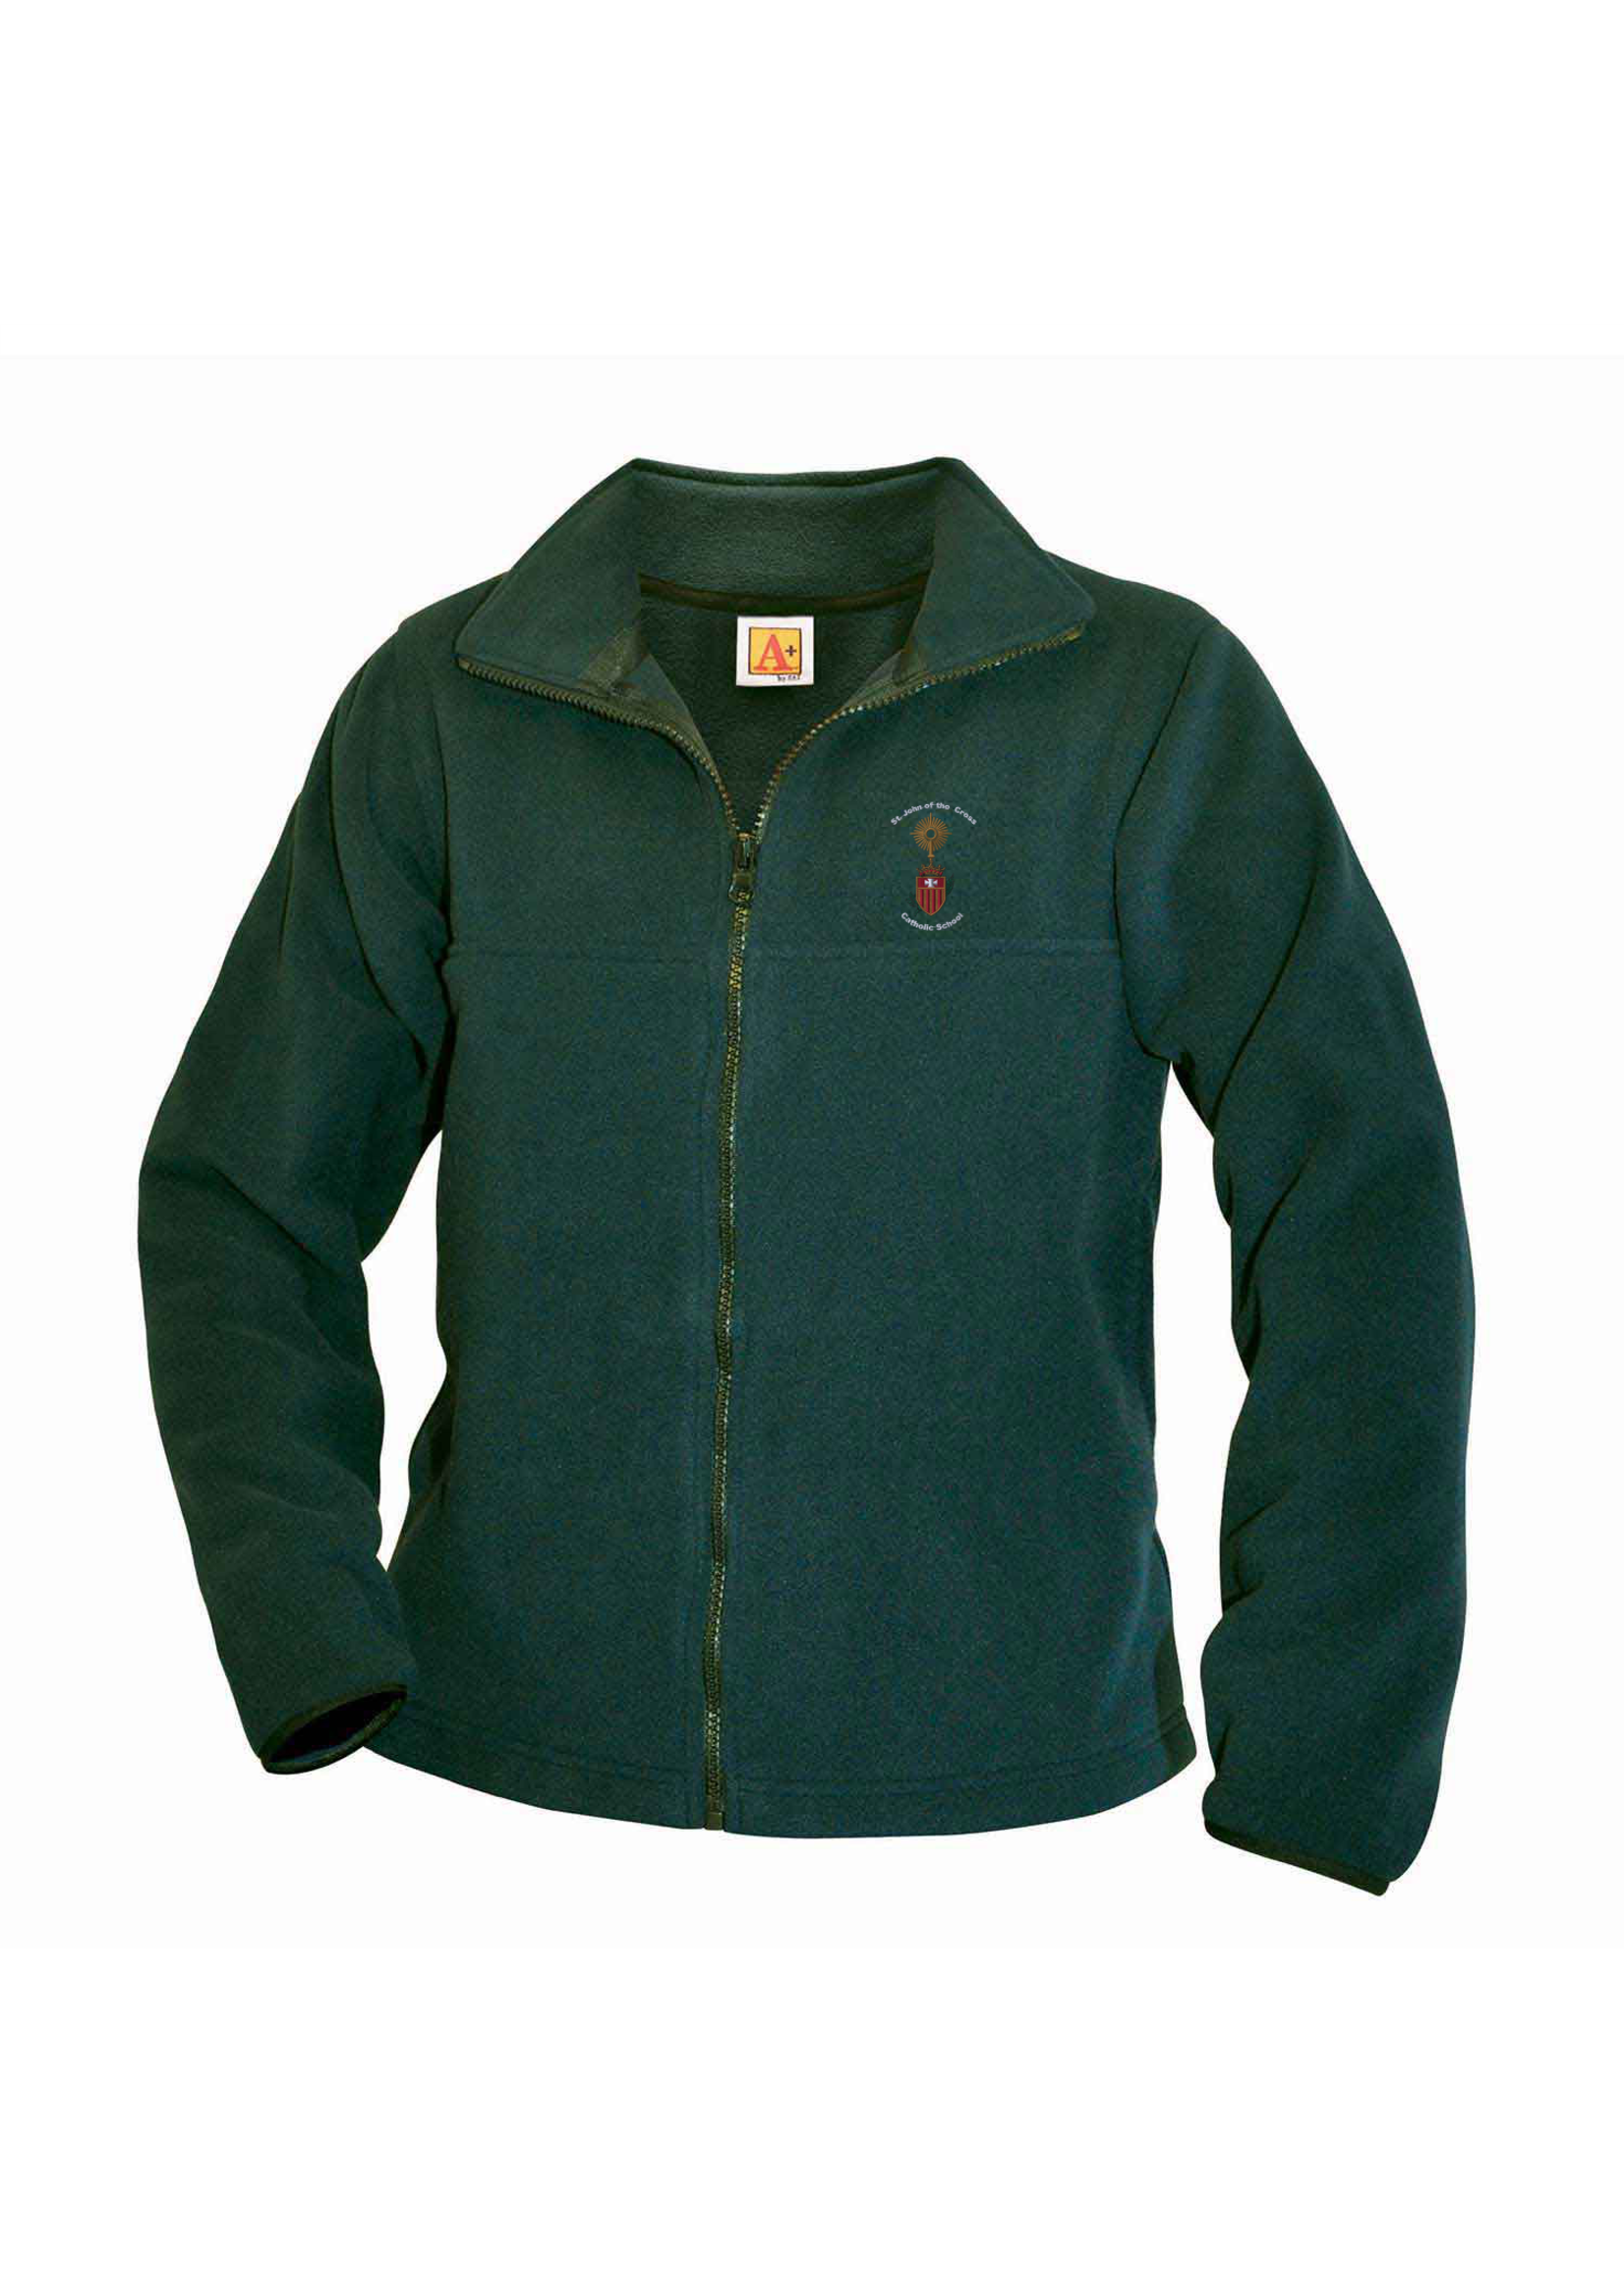 SJC Green Fleece Full Zip Jacket